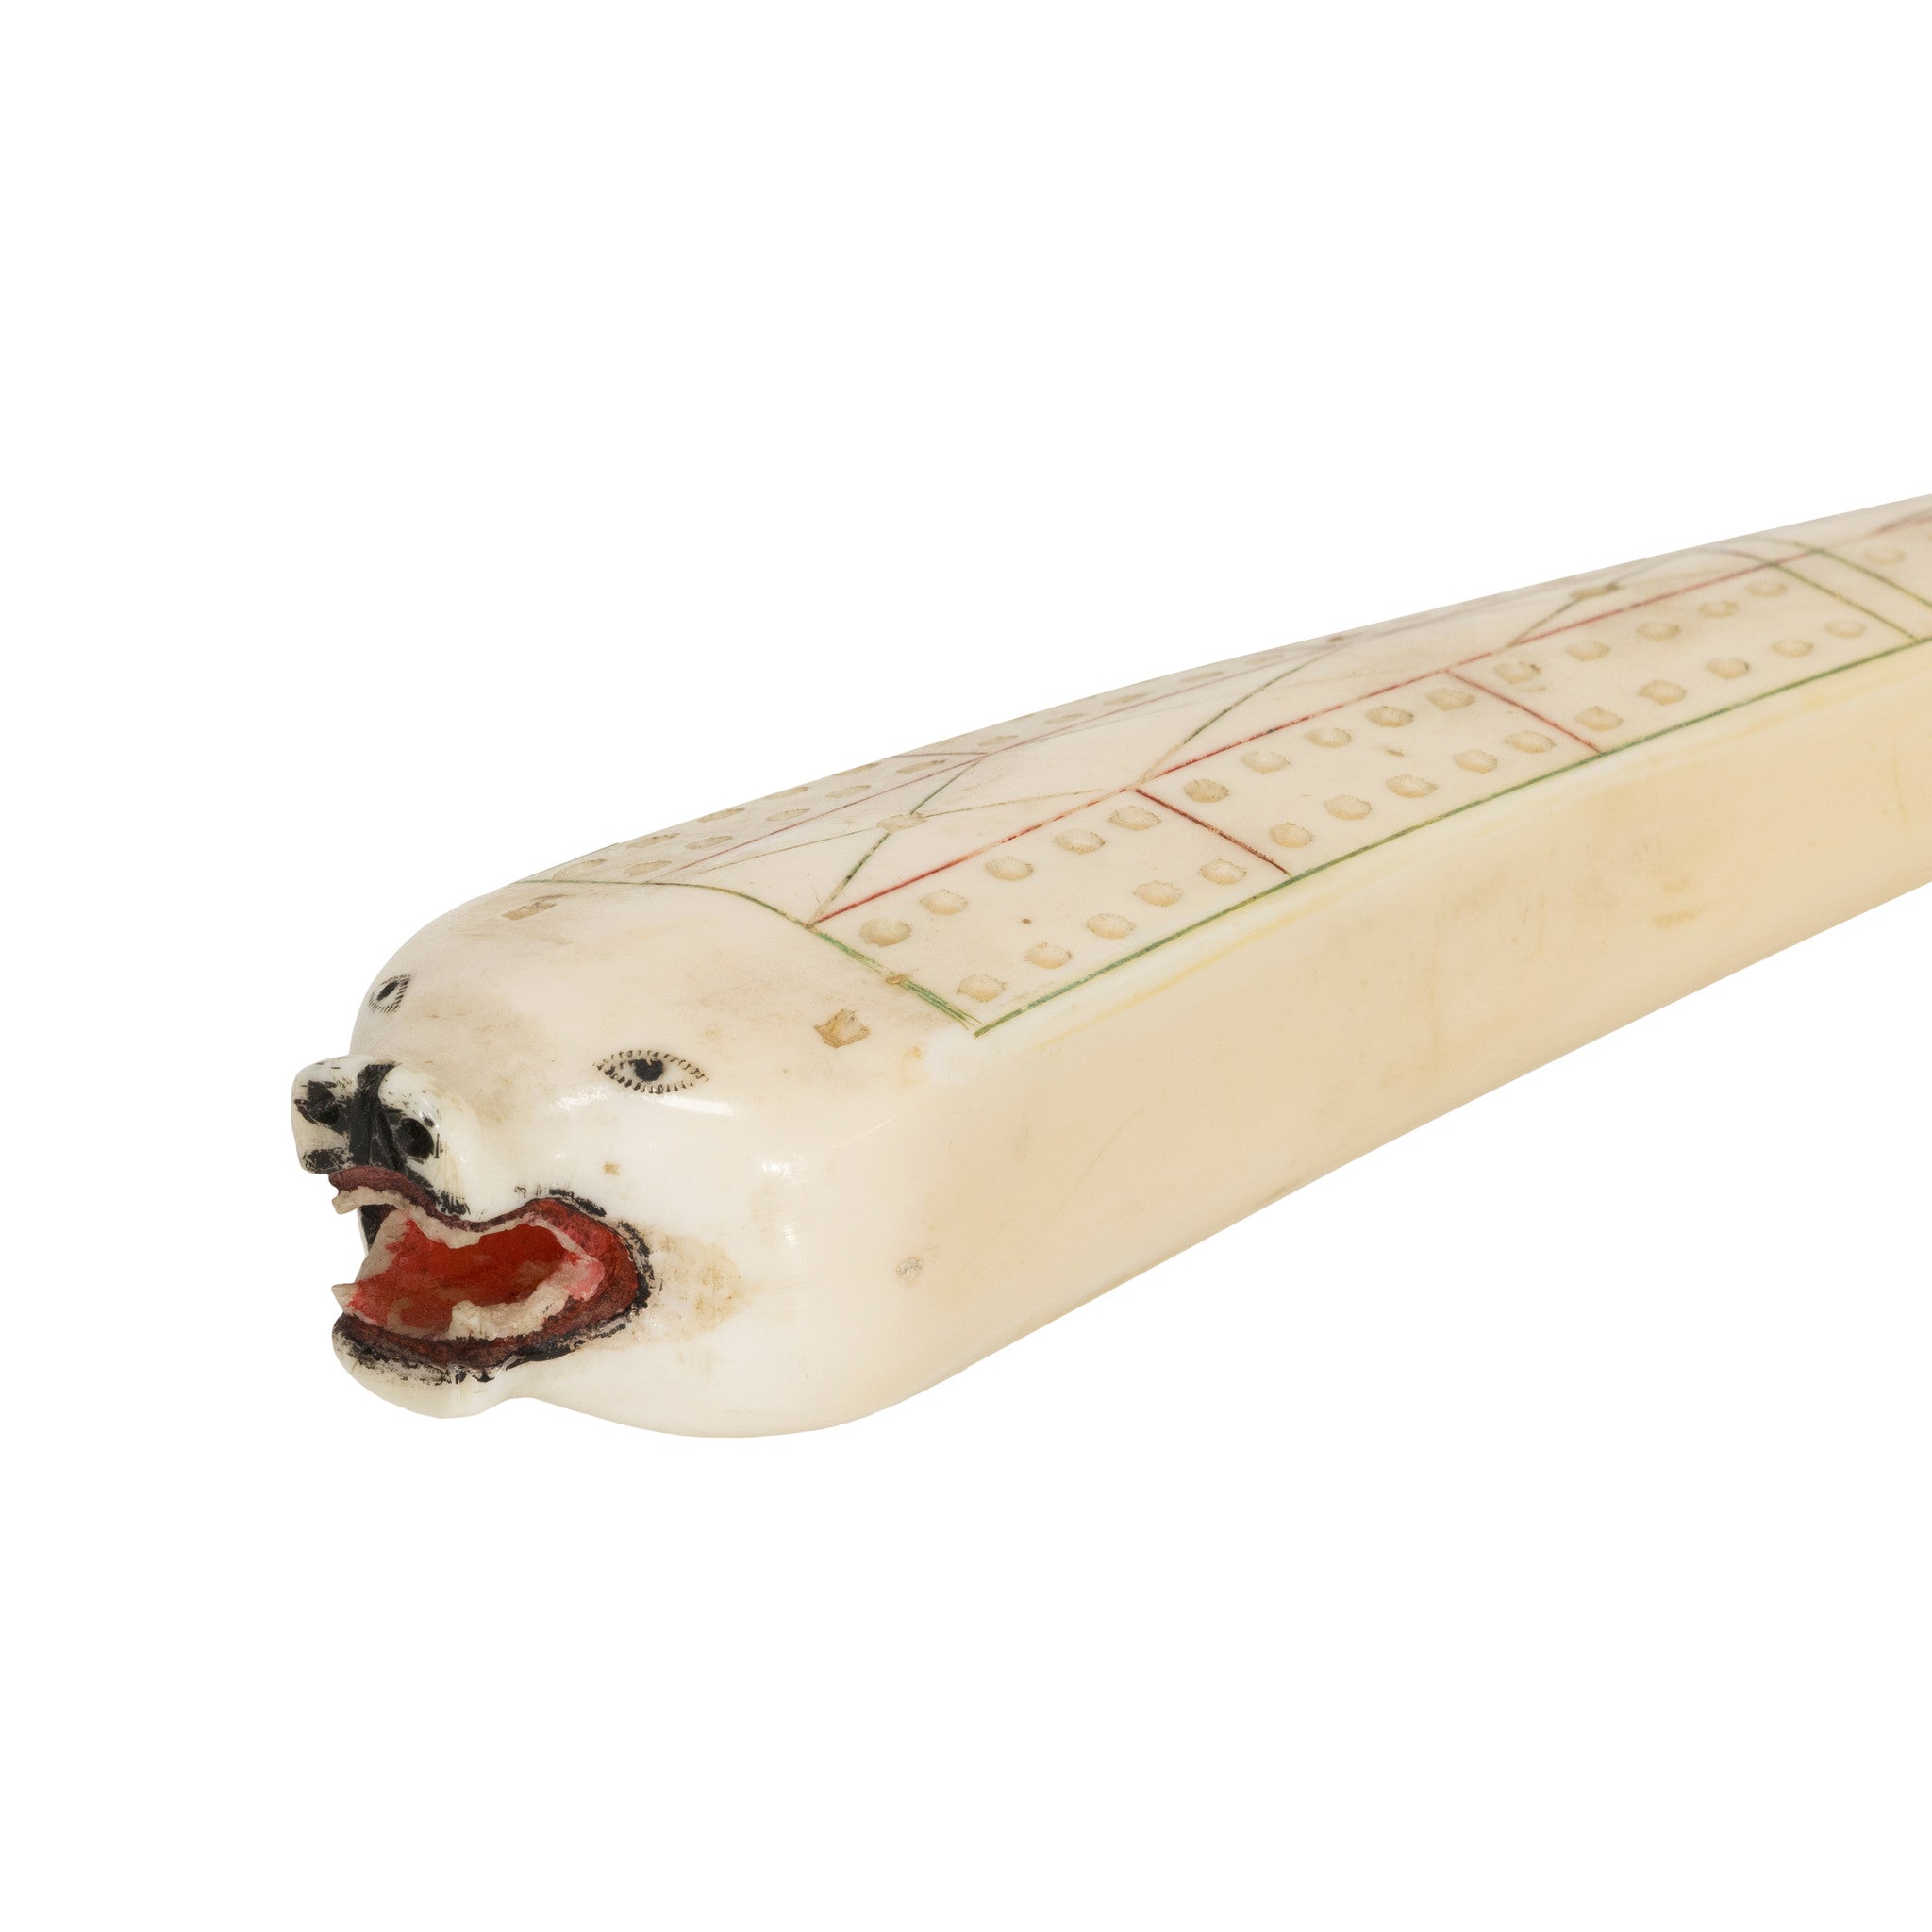 Inuit Carved Ivory Cribbage Board